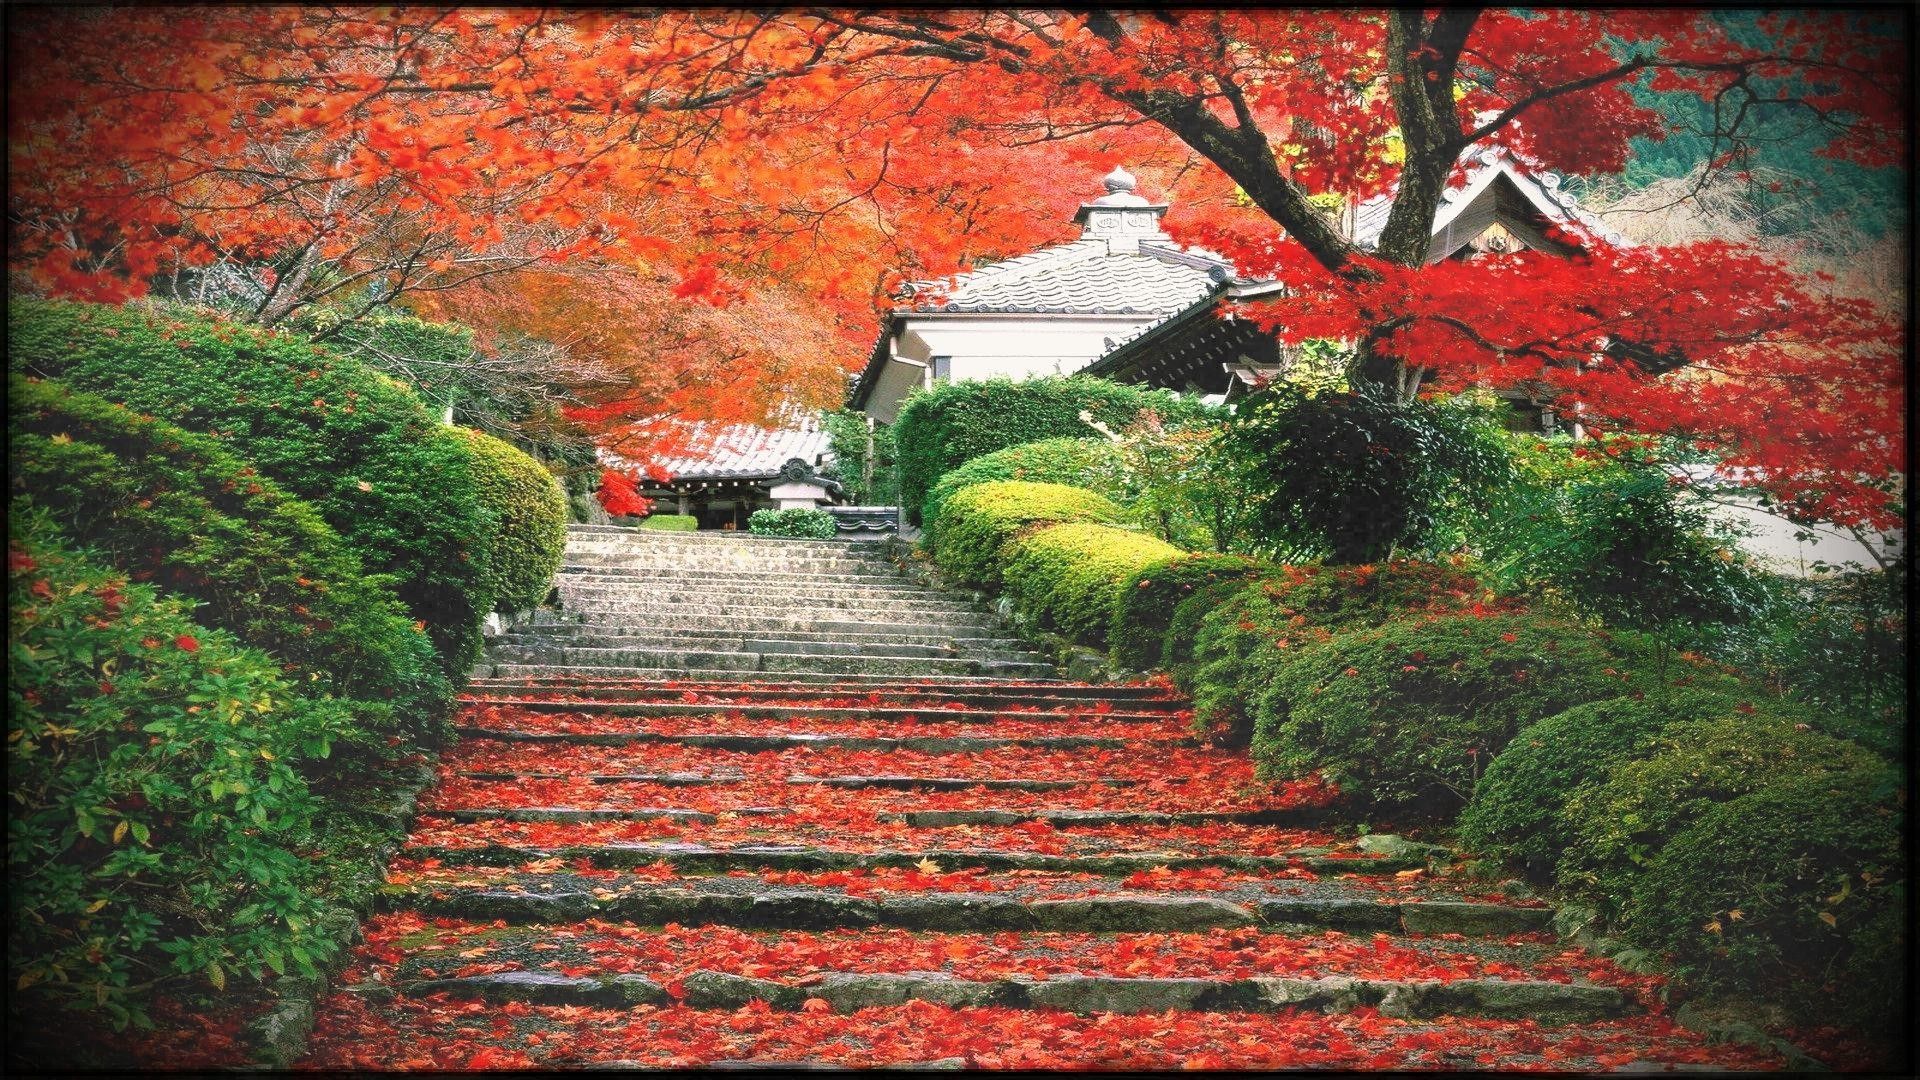 Japan Landscape Wallpapers - 4k, HD Japan Landscape Backgrounds on ...